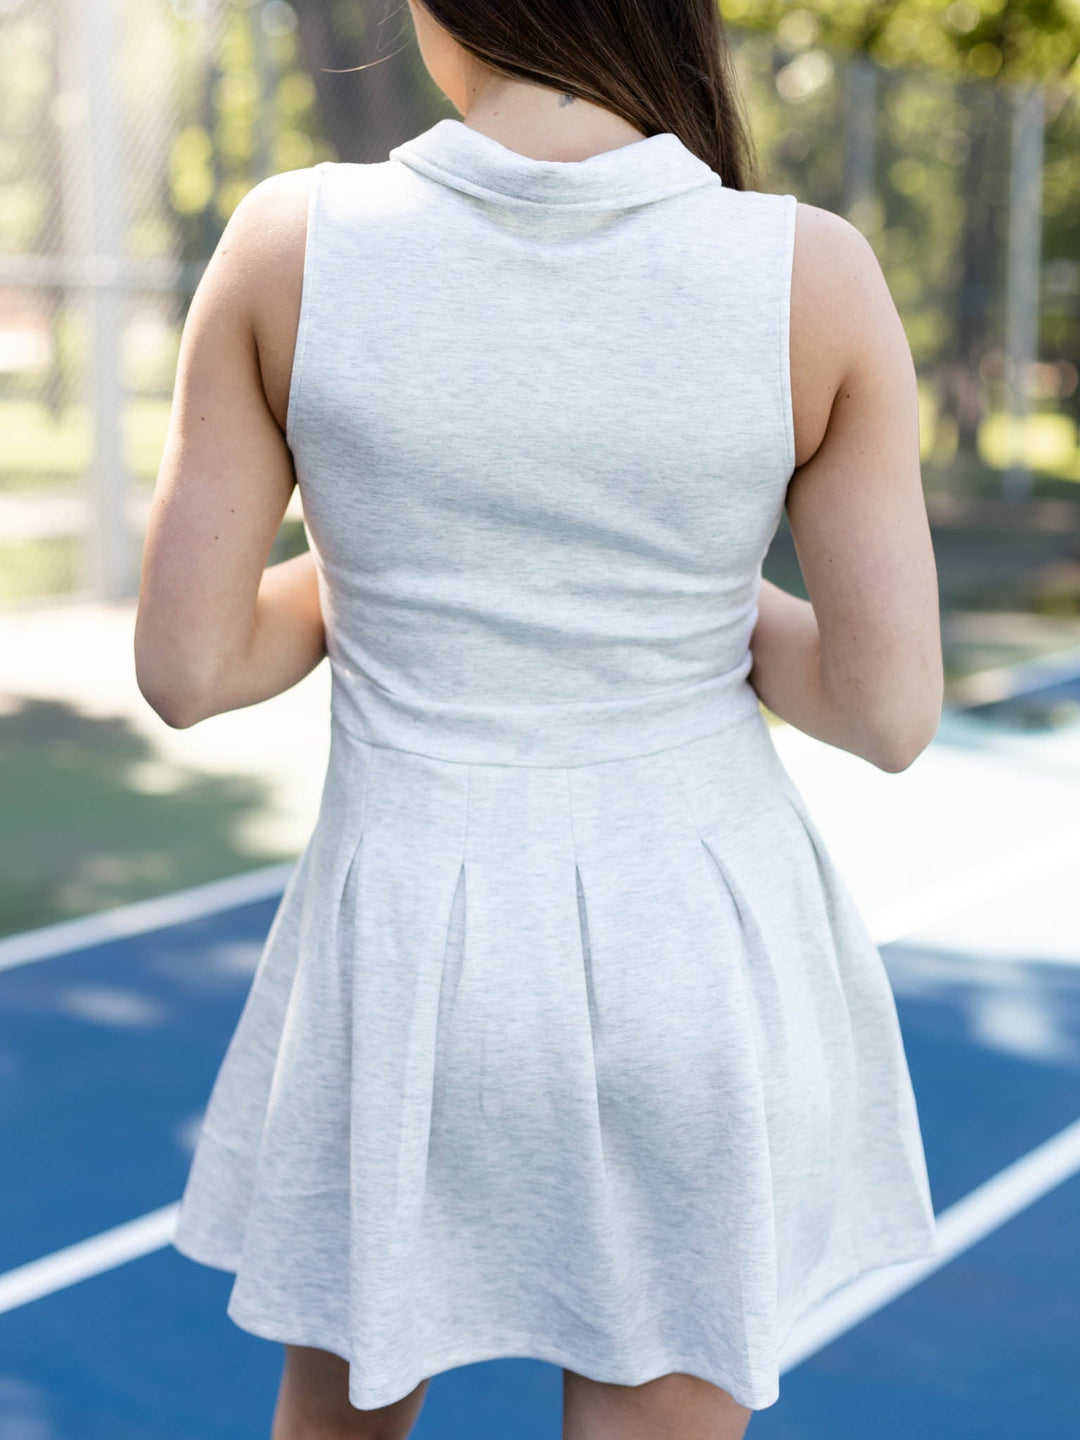 Super Soft Tennis DressDress